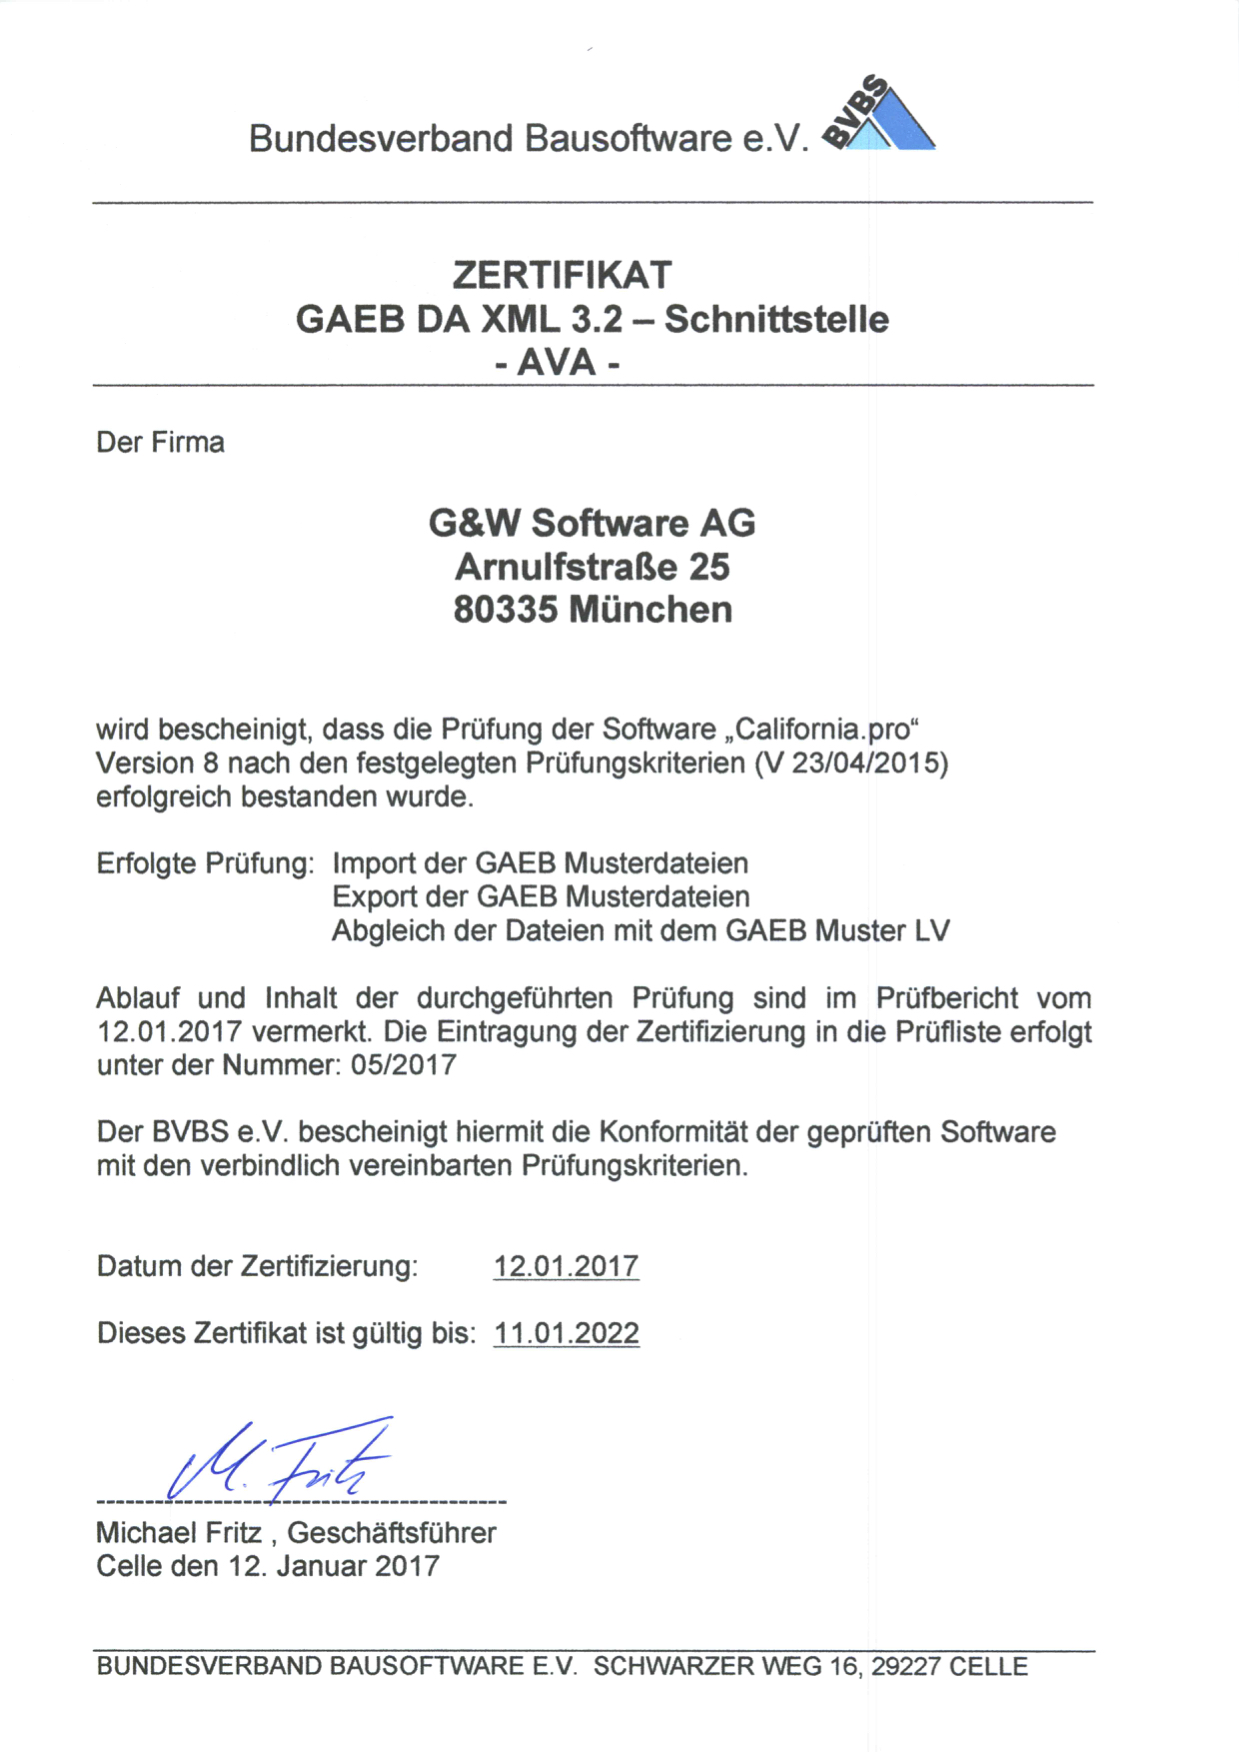 GAEB-Zertifikat